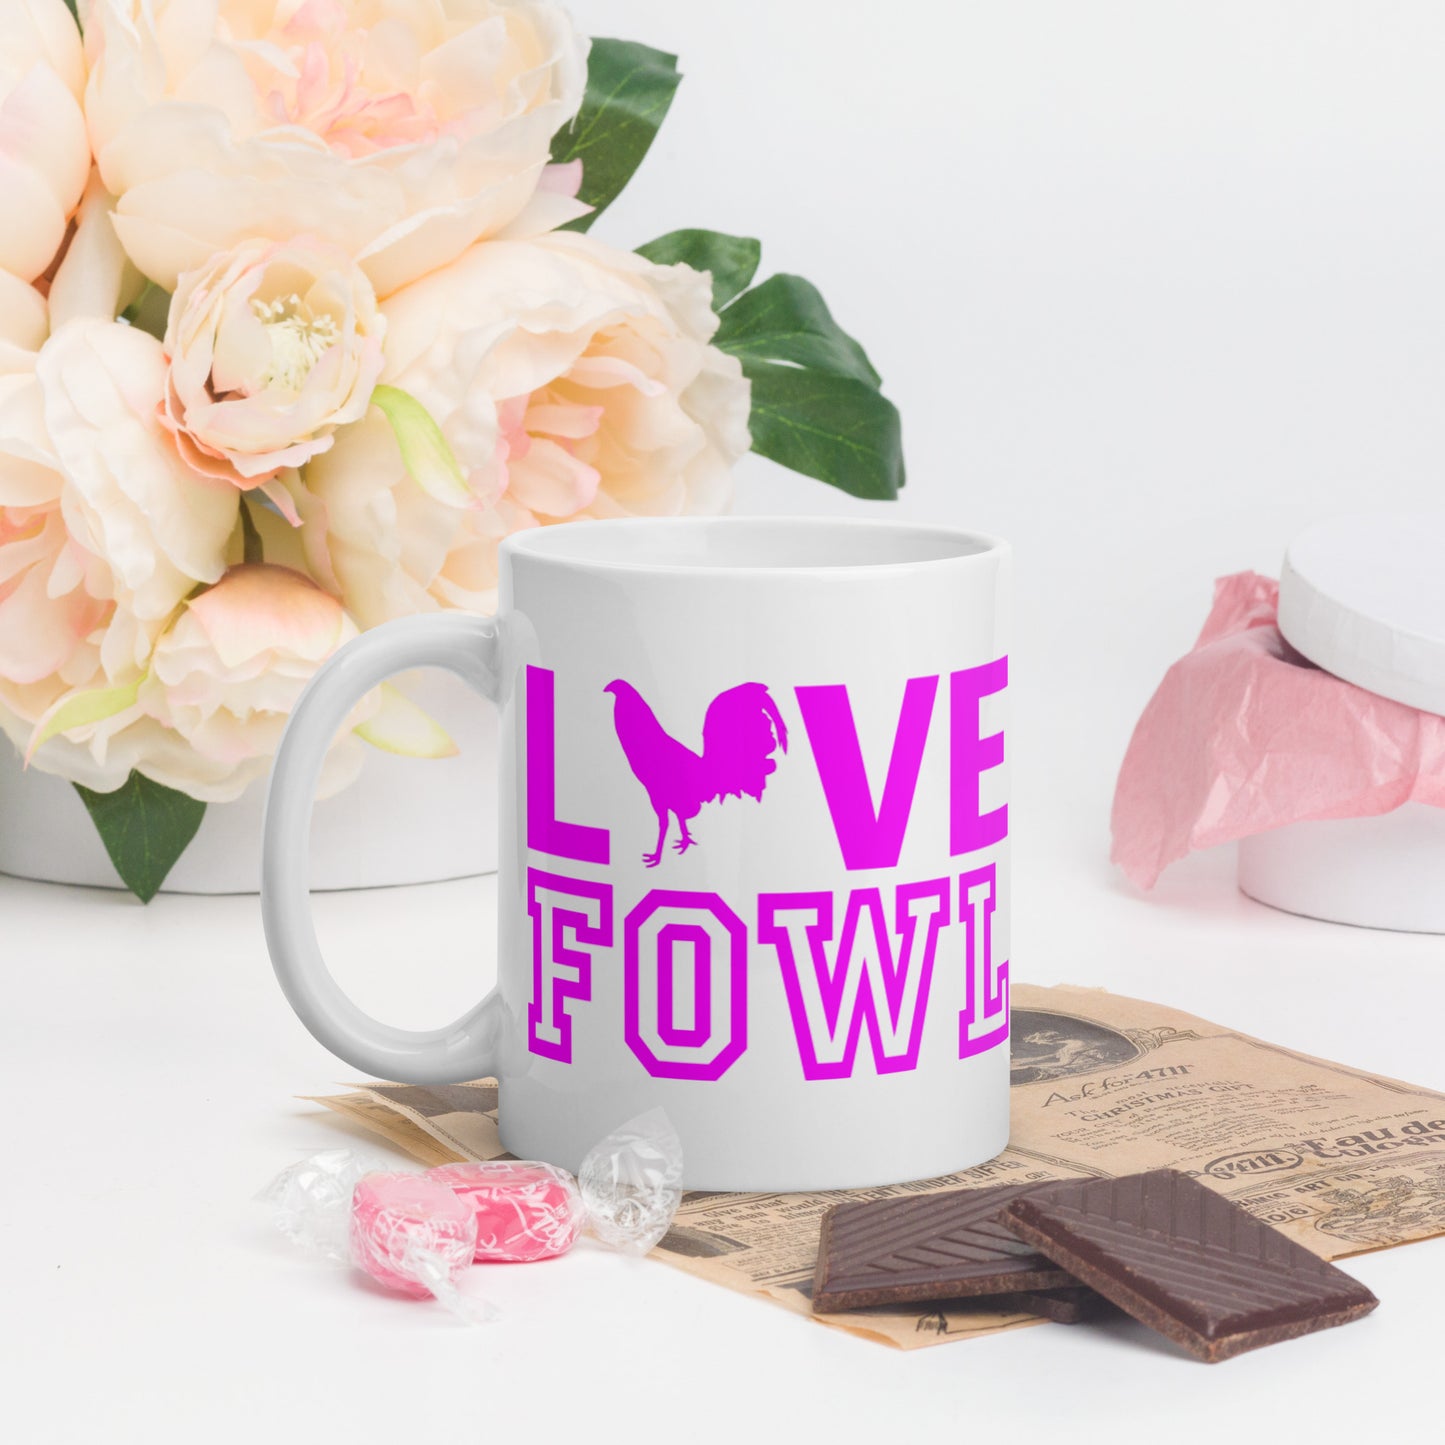 VS LOVE FOWL PINK LEAF Gamefowl Rooster White Glossy Mug